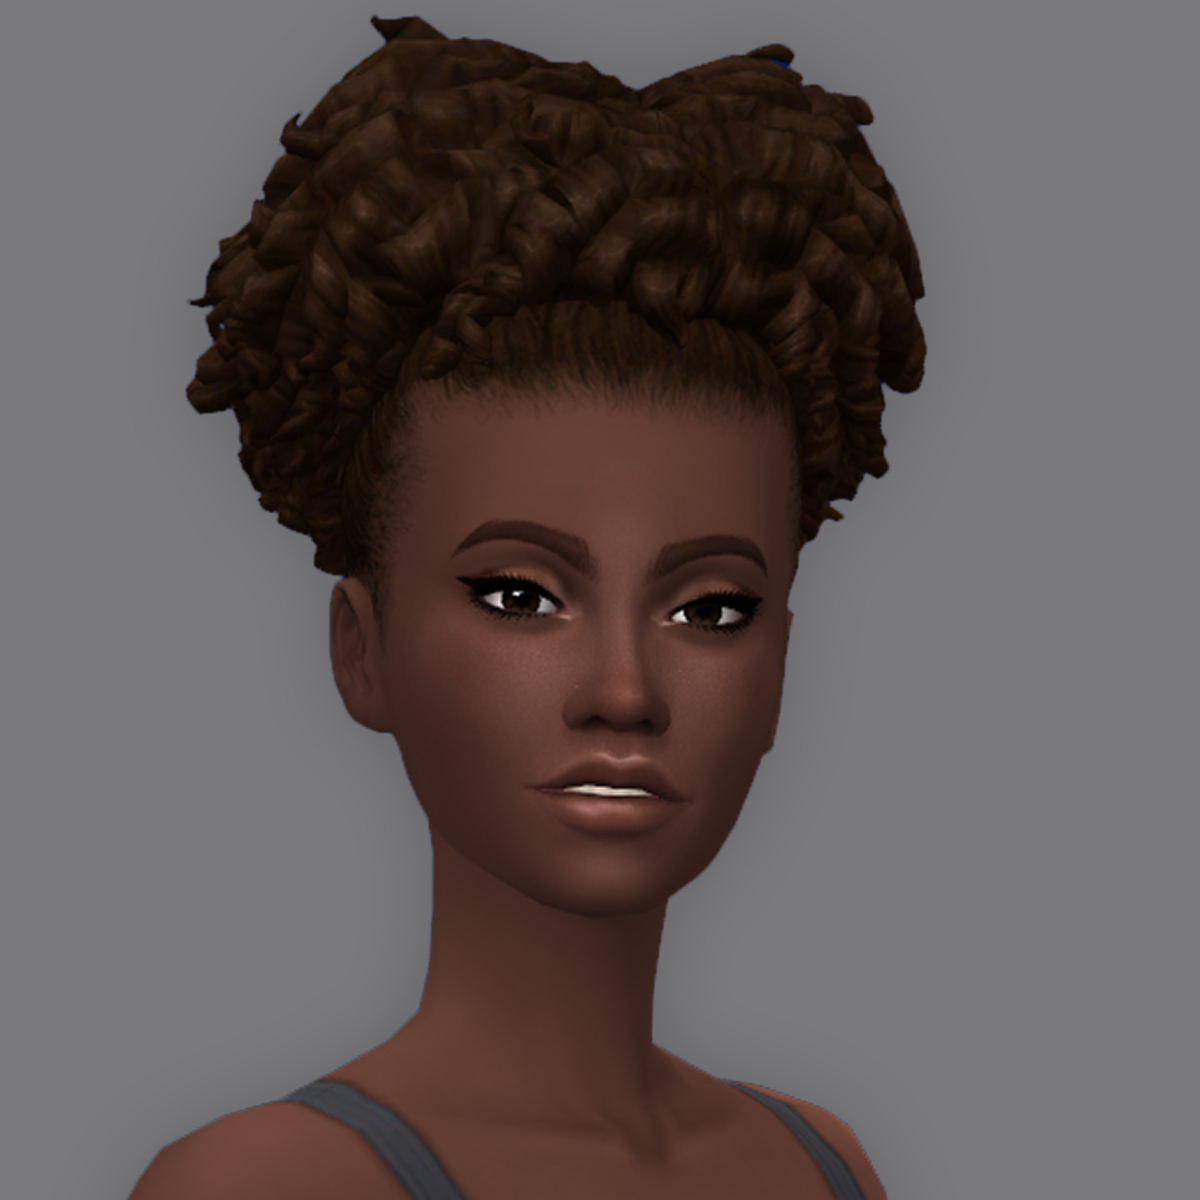 QICC - Nehir Hair - The Sims 4 Create a Sim - CurseForge